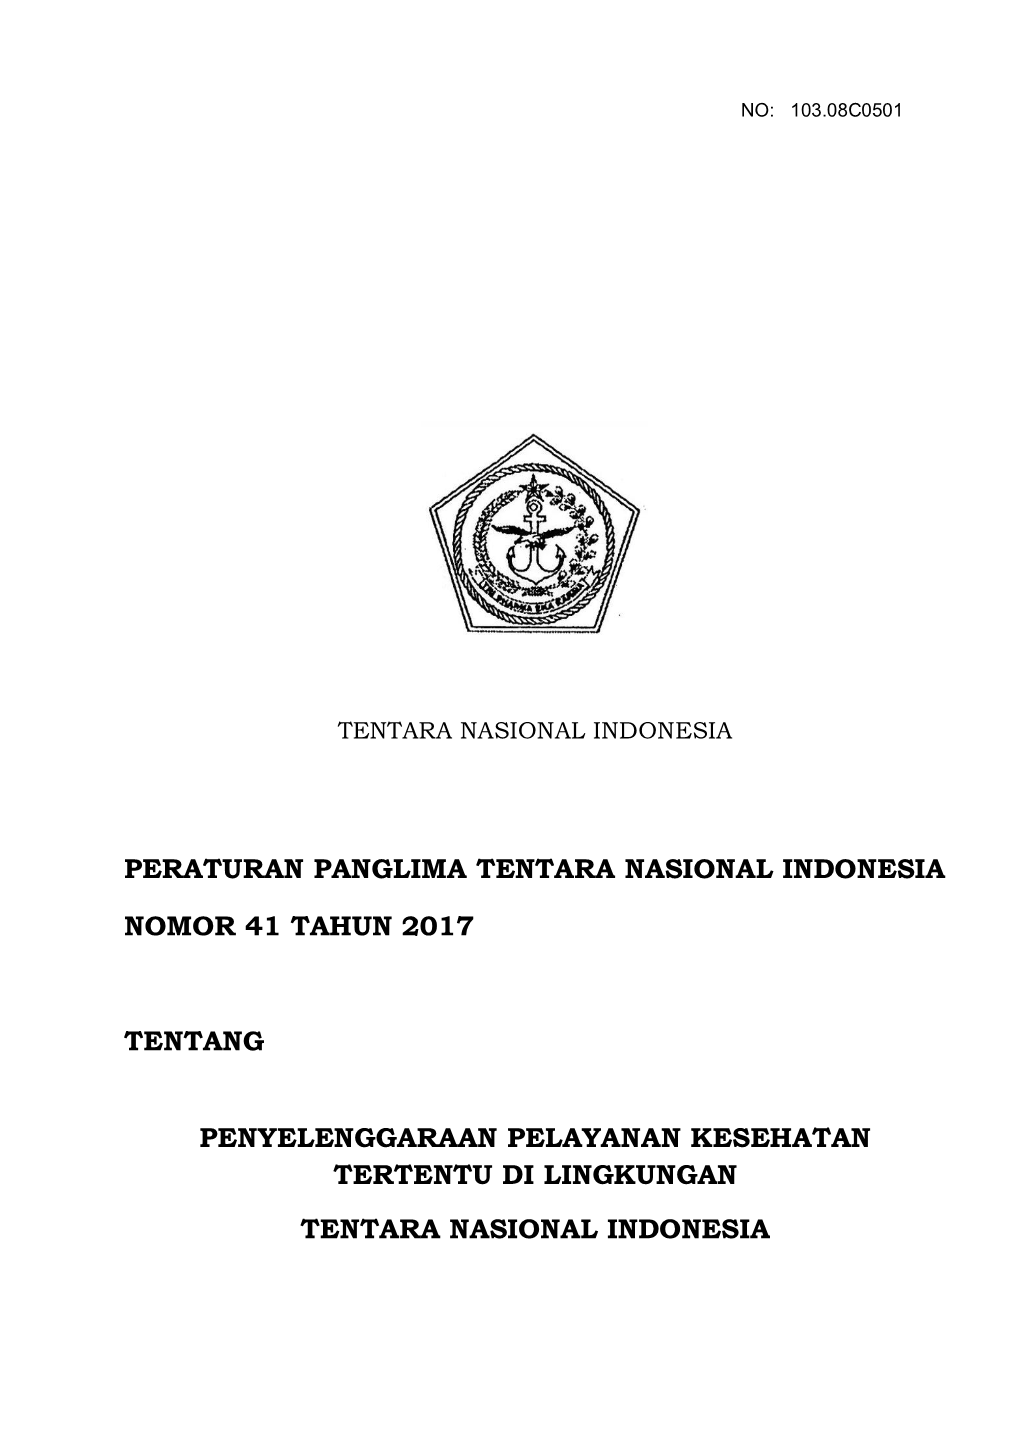 Peraturan Panglima Tentara Nasional Indonesia Nomor 41 Tahun 2017